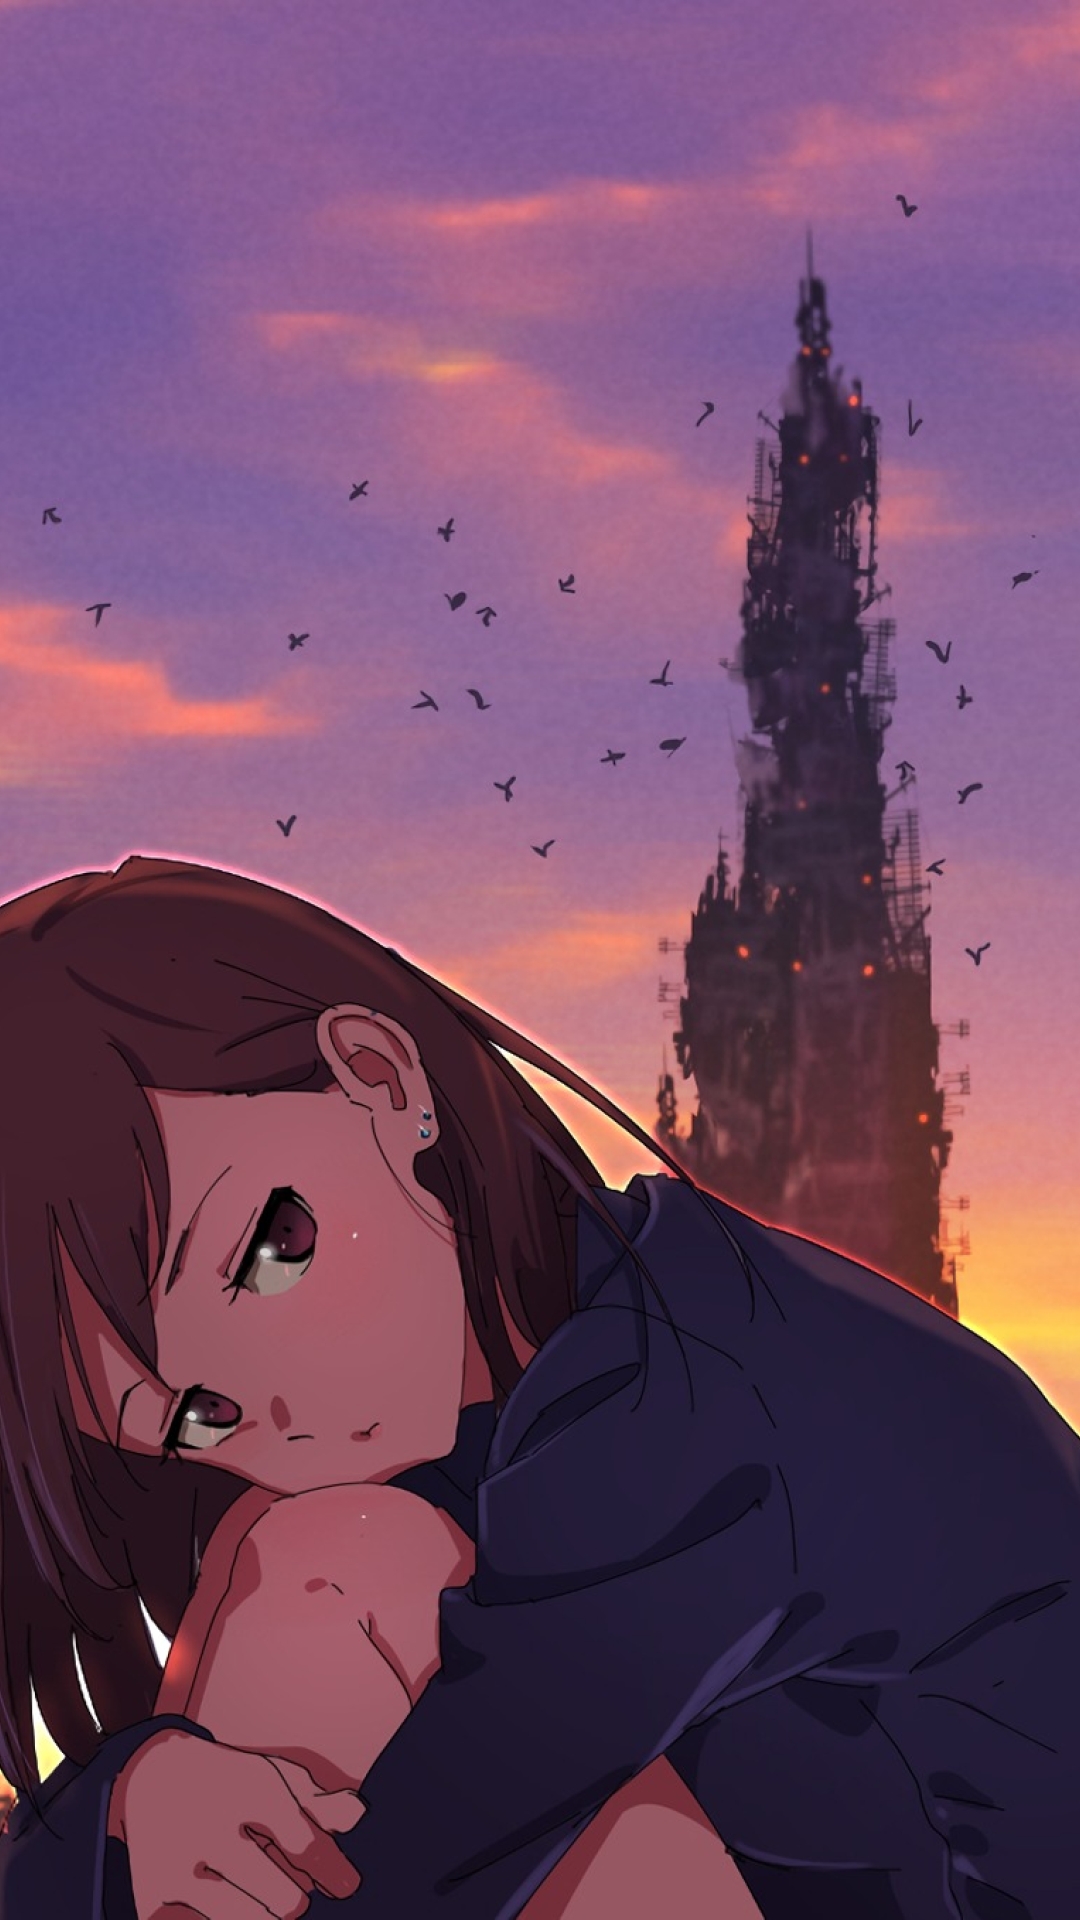 Broken Anime Girl Edit Konsep Terkini